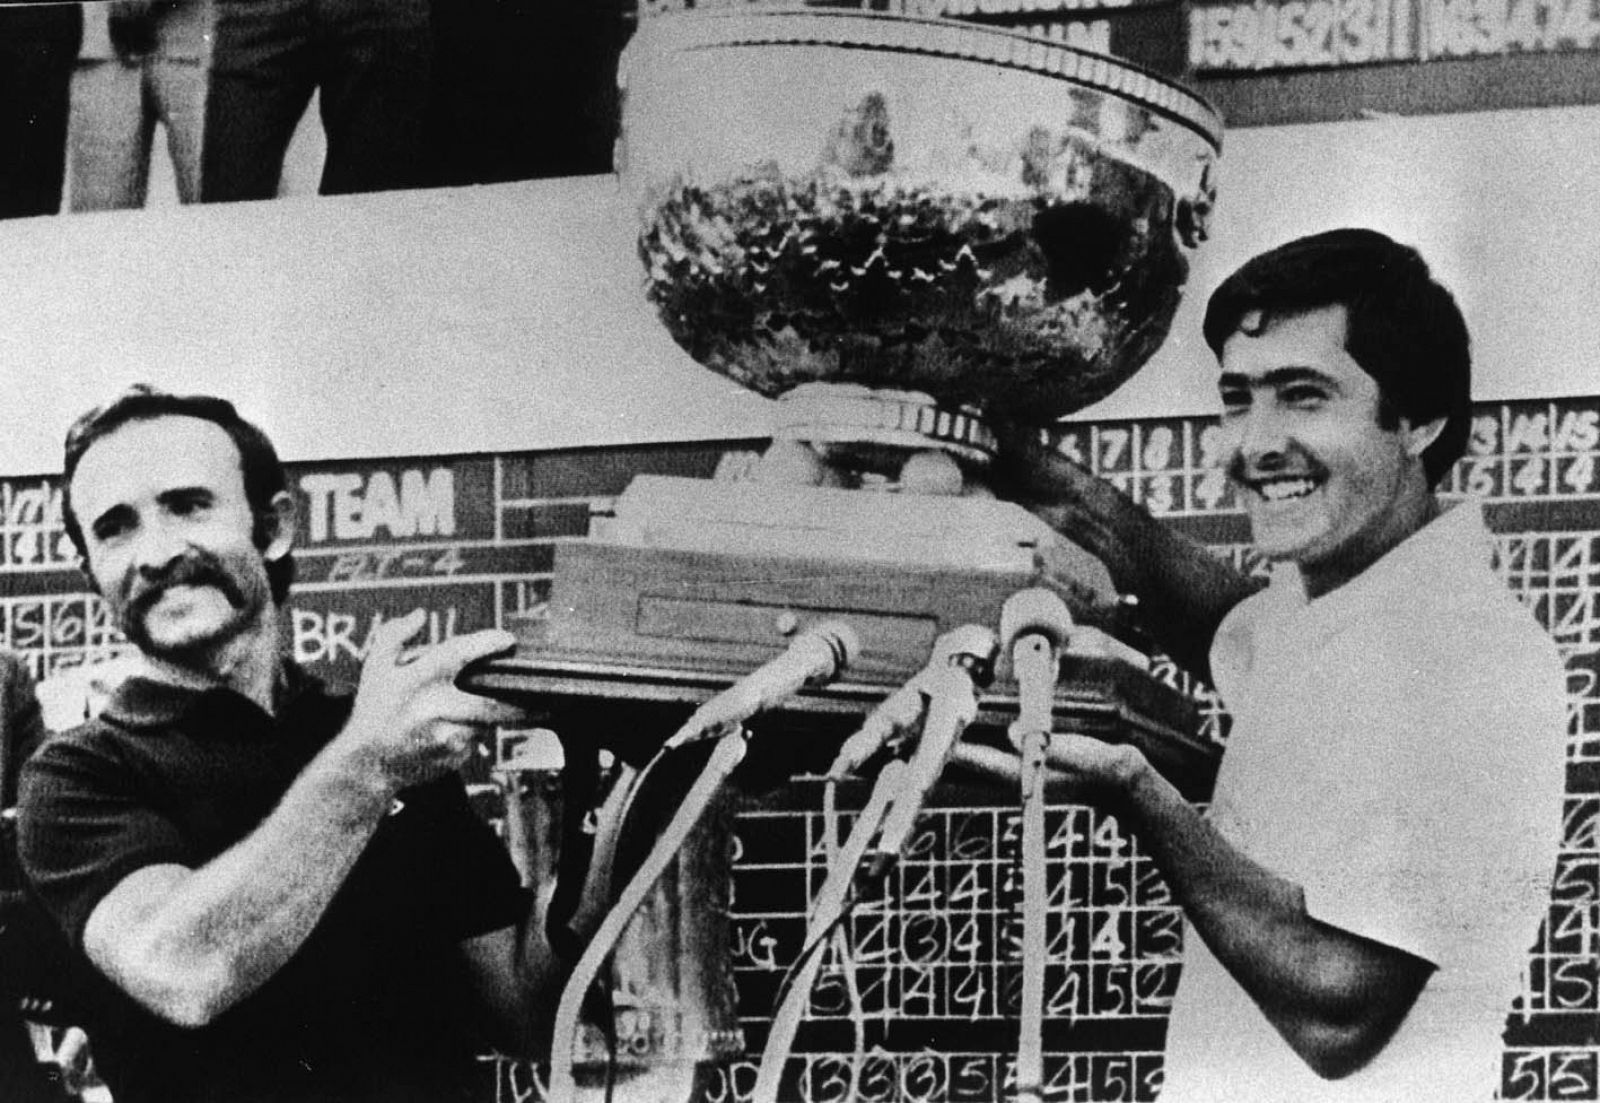 En 1977, Severiano Ballesteros comienza a disfrutar de gran fama en Estados Unidos y Gran Bretaña, gracias a sus victorias en la Copa del Mundo, con Antonio Garrido.